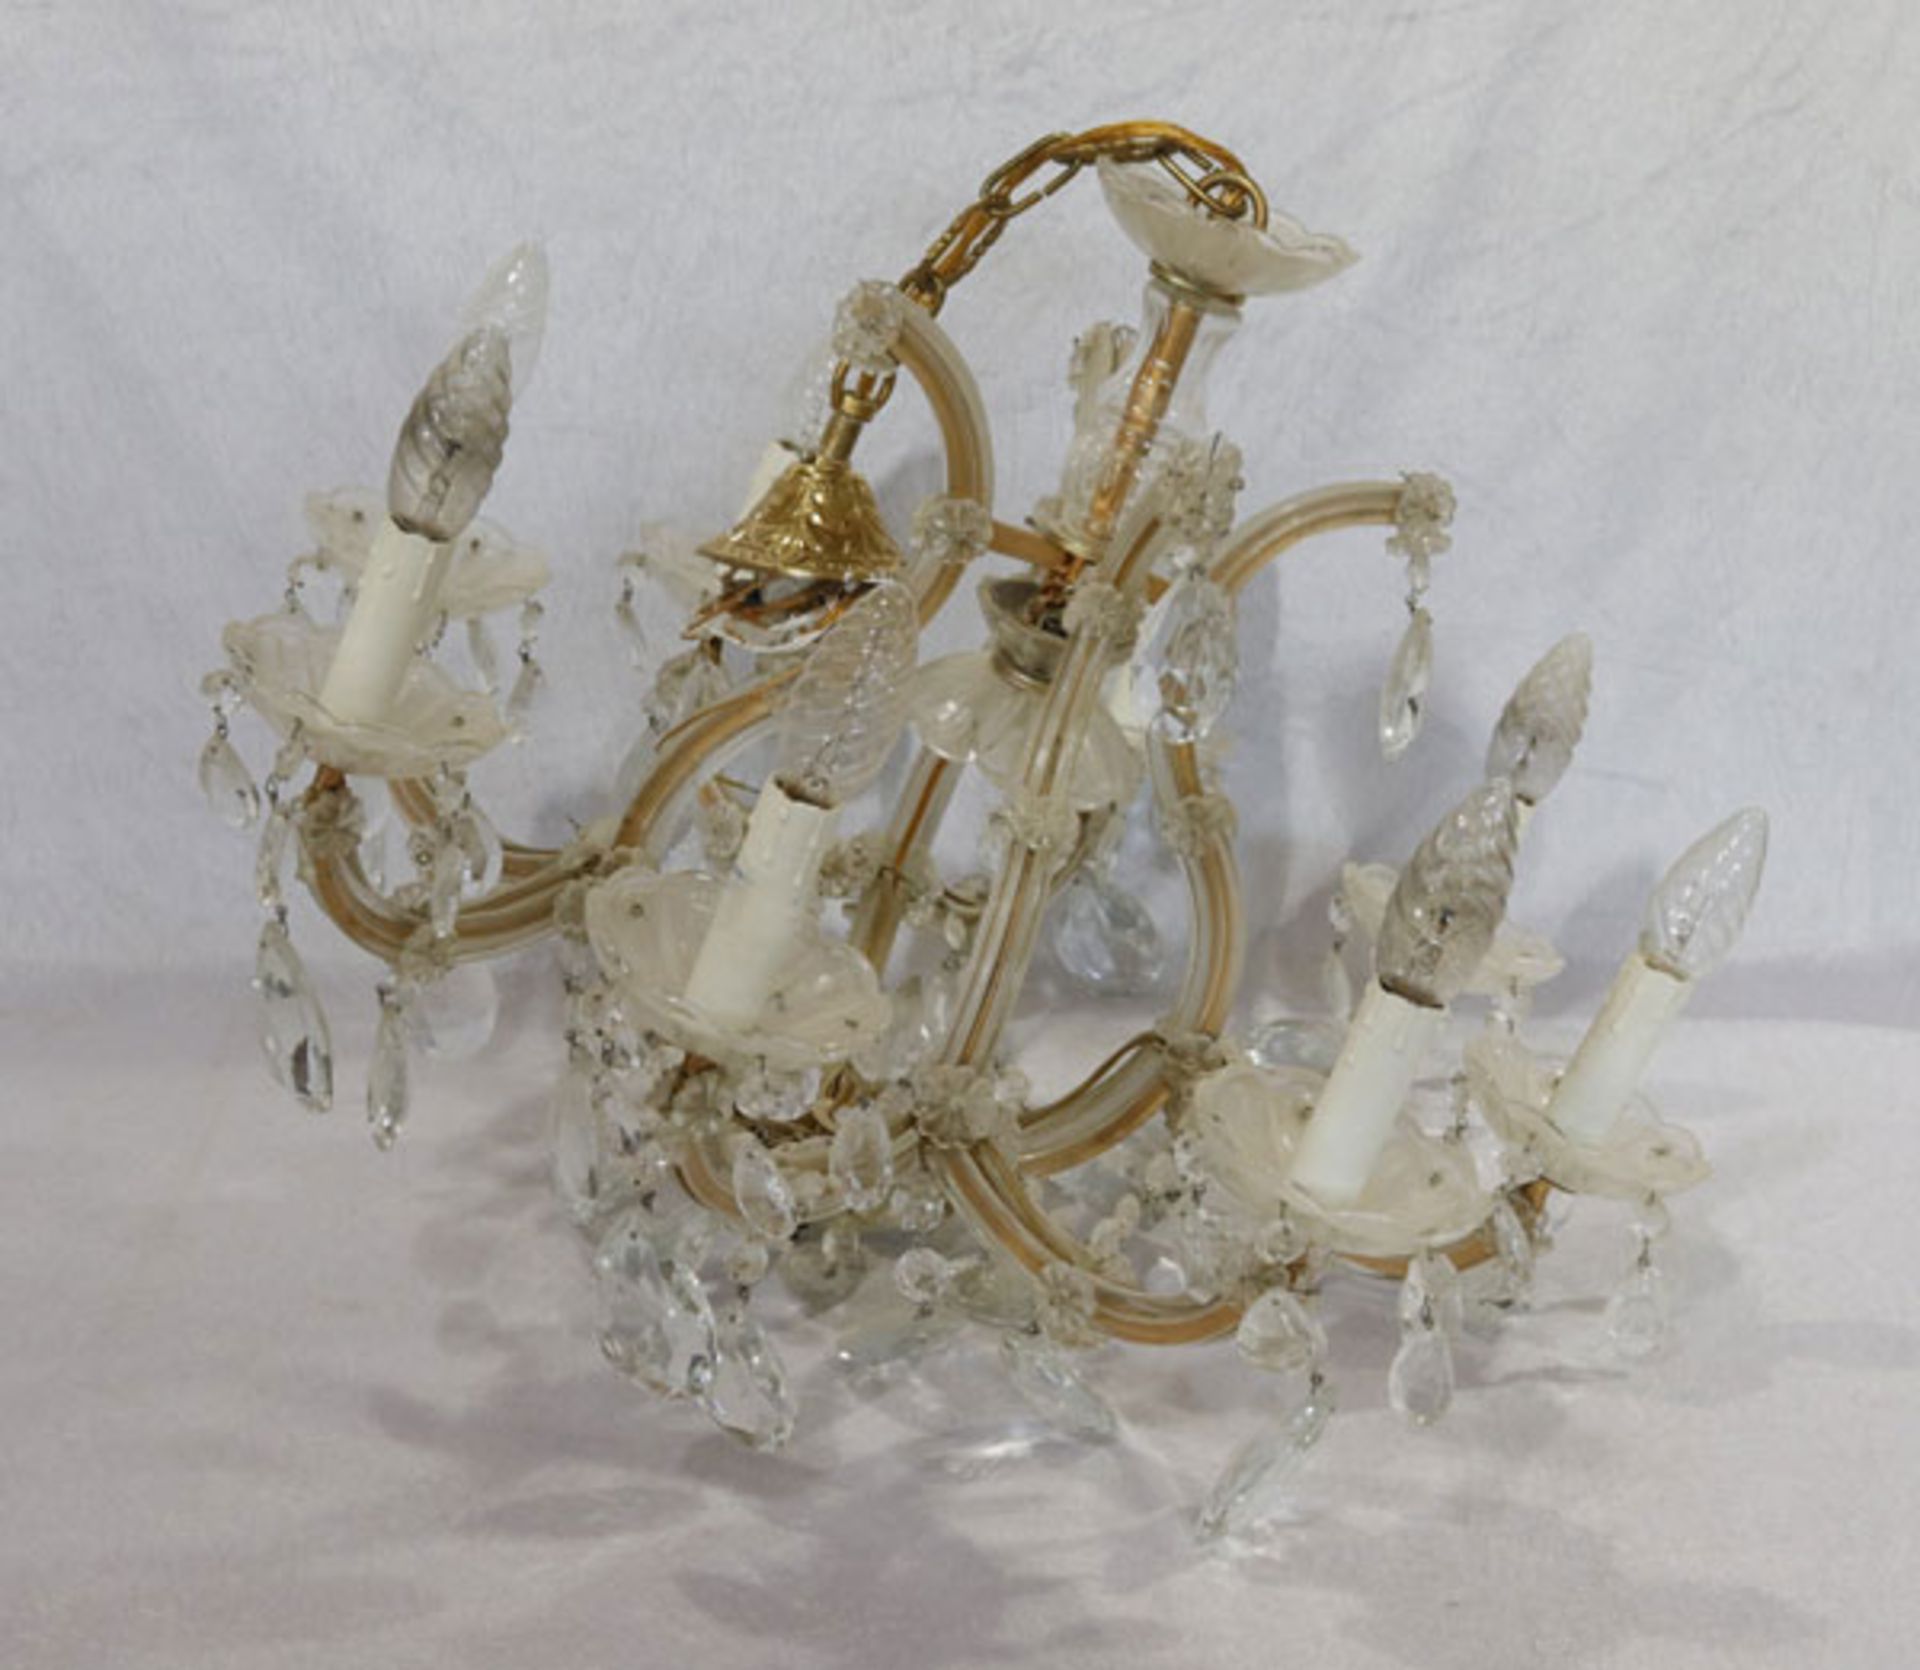 Kristall Hängelampe, 8-armig mit Glasprismen, H 76 cm, D 67 cm, Gebrauchsspuren, Funktion nicht